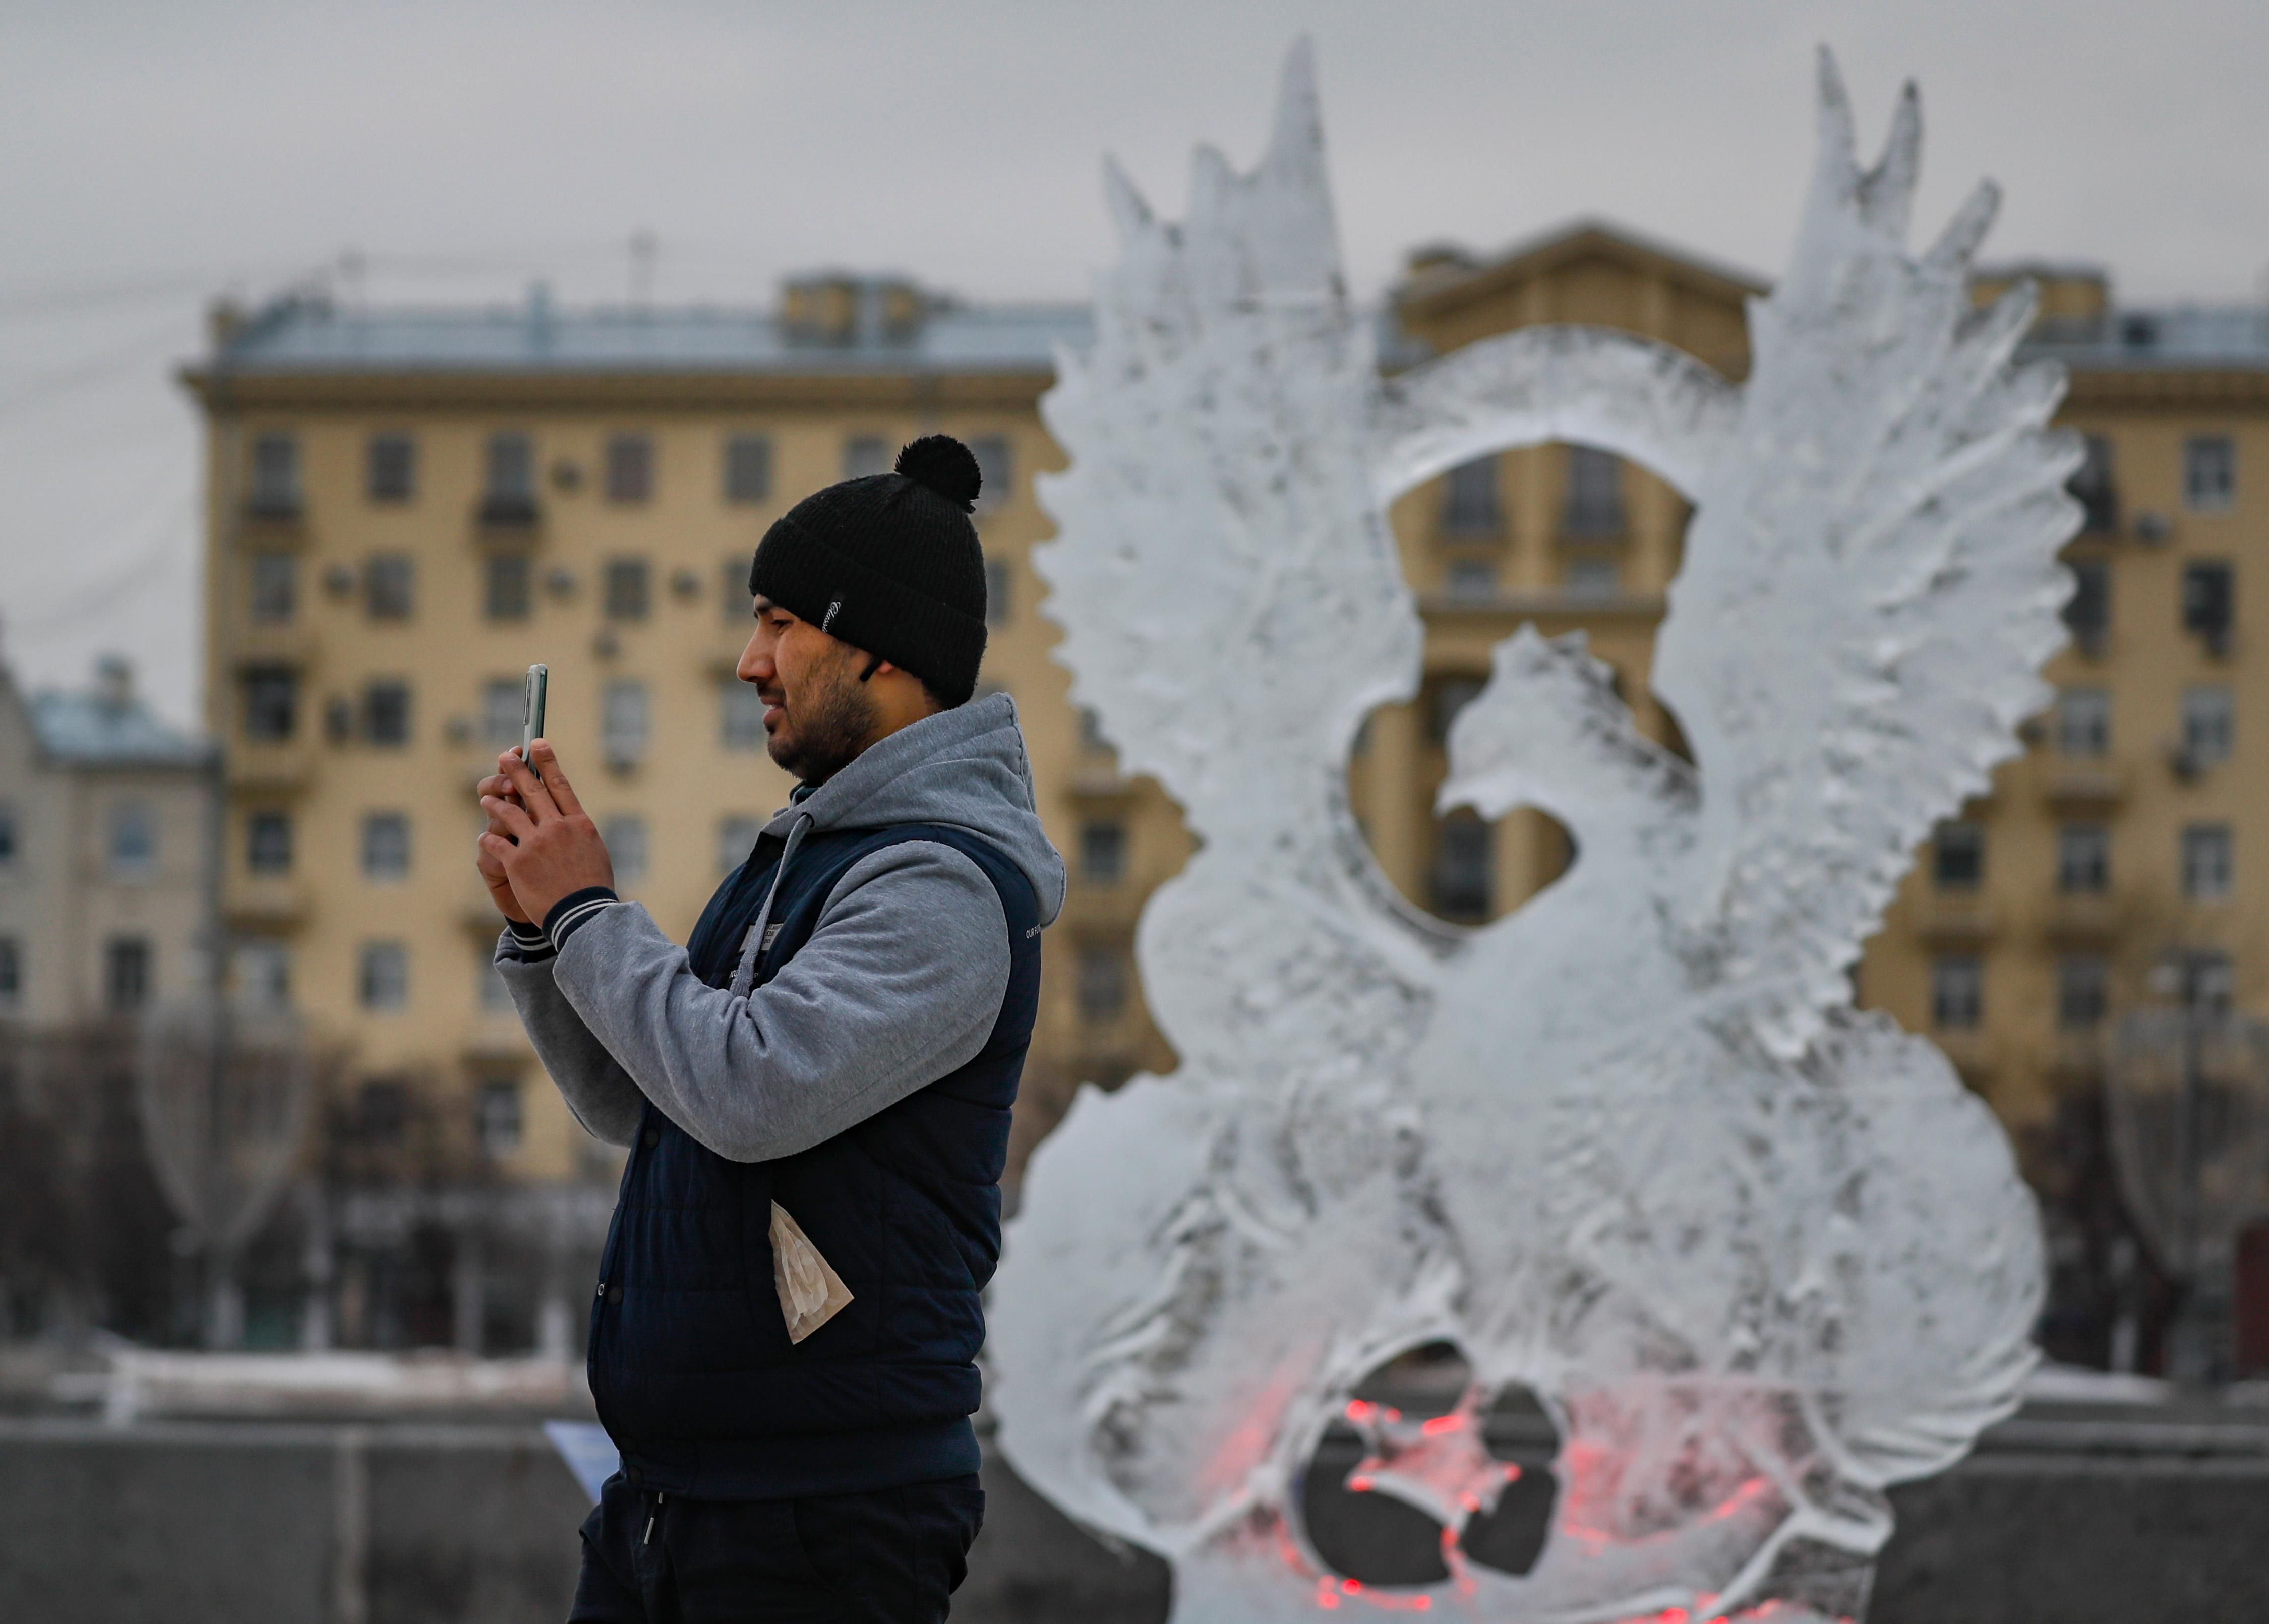 莫斯科|莫斯科庆祝冰雪节 精美冰雕引人注目